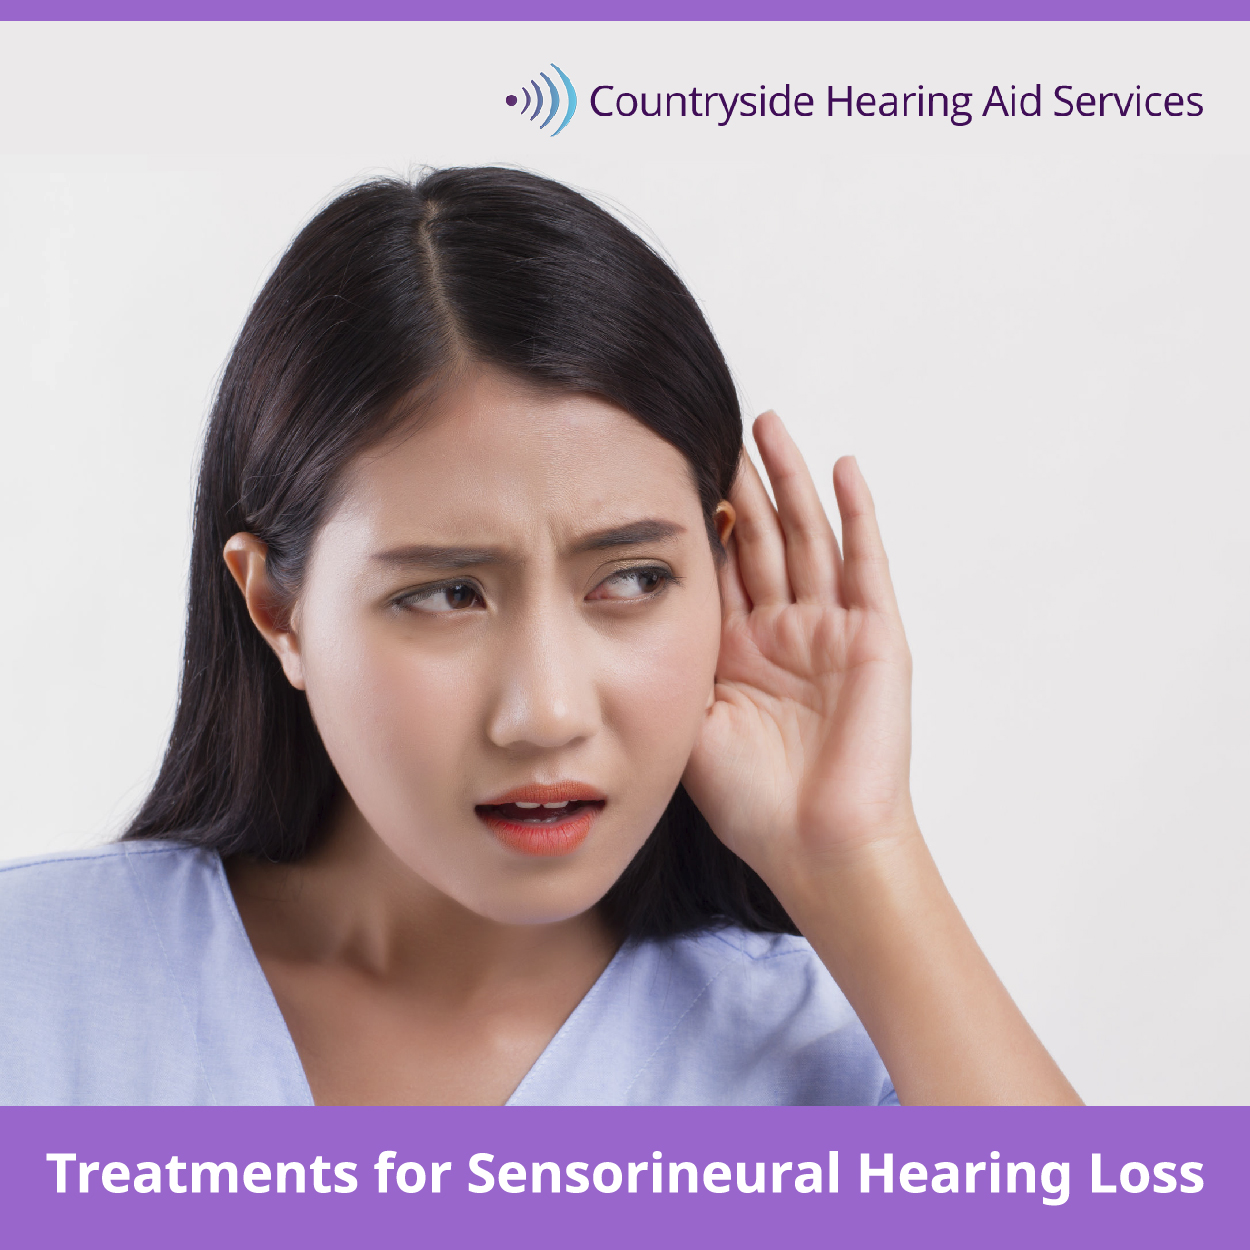 Treatments for Sensorineural Hearing Loss